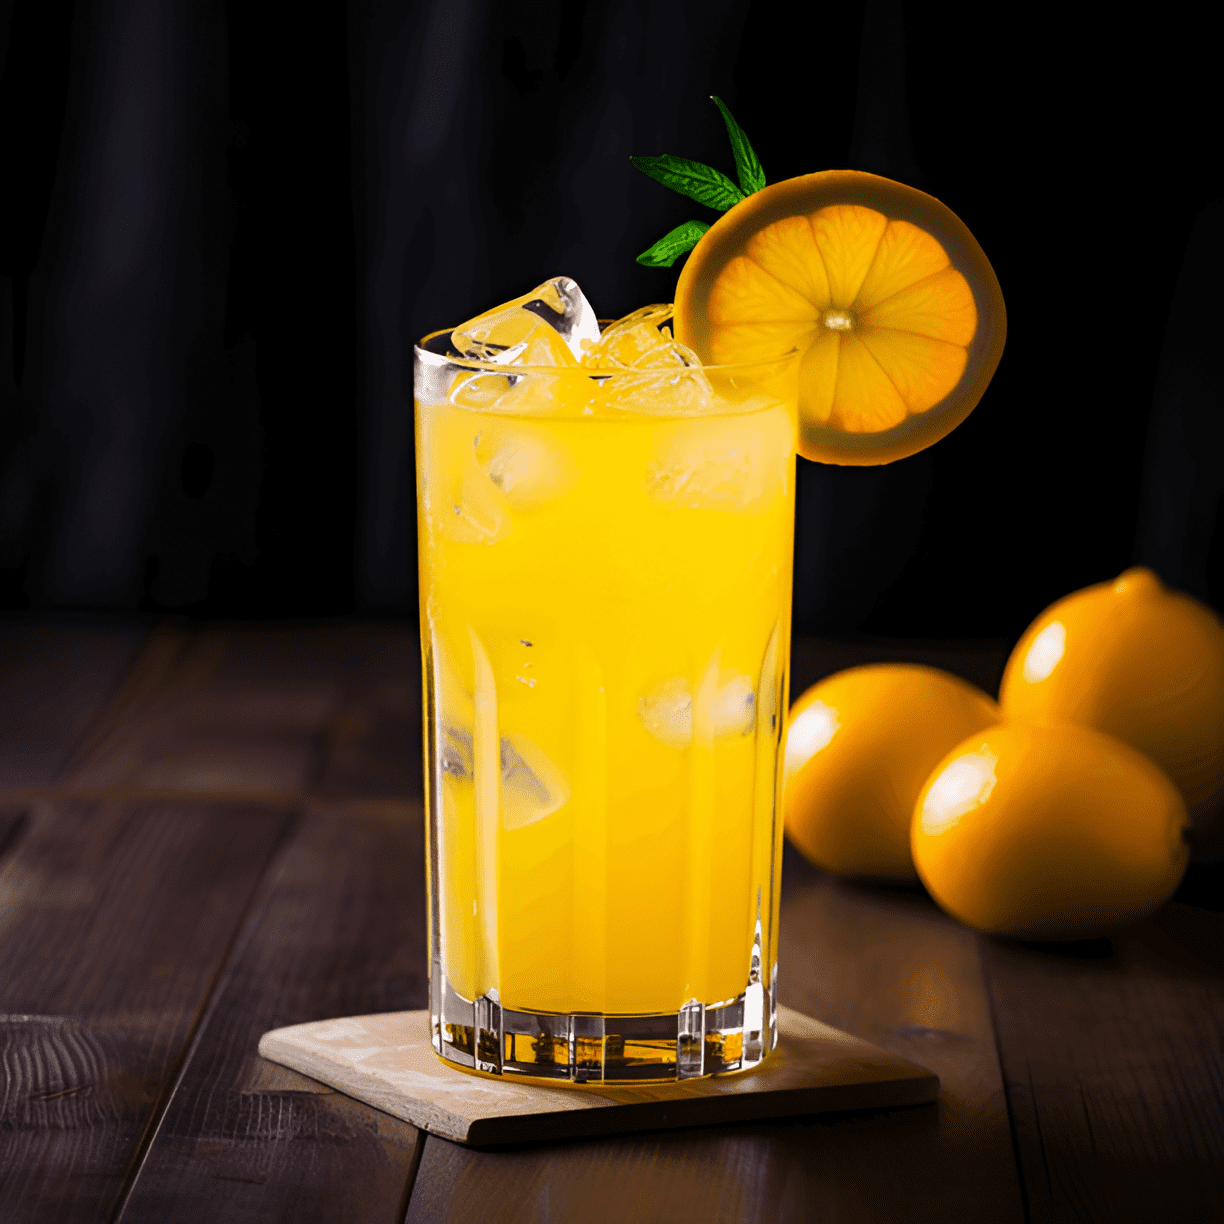 El cóctel Screwdriver ofrece un perfil de sabor brillante, cítrico y ligeramente dulce. La suavidad del vodka se complementa con el sabor refrescante y ácido del jugo de naranja, lo que lo convierte en un cóctel equilibrado y fácil de beber.